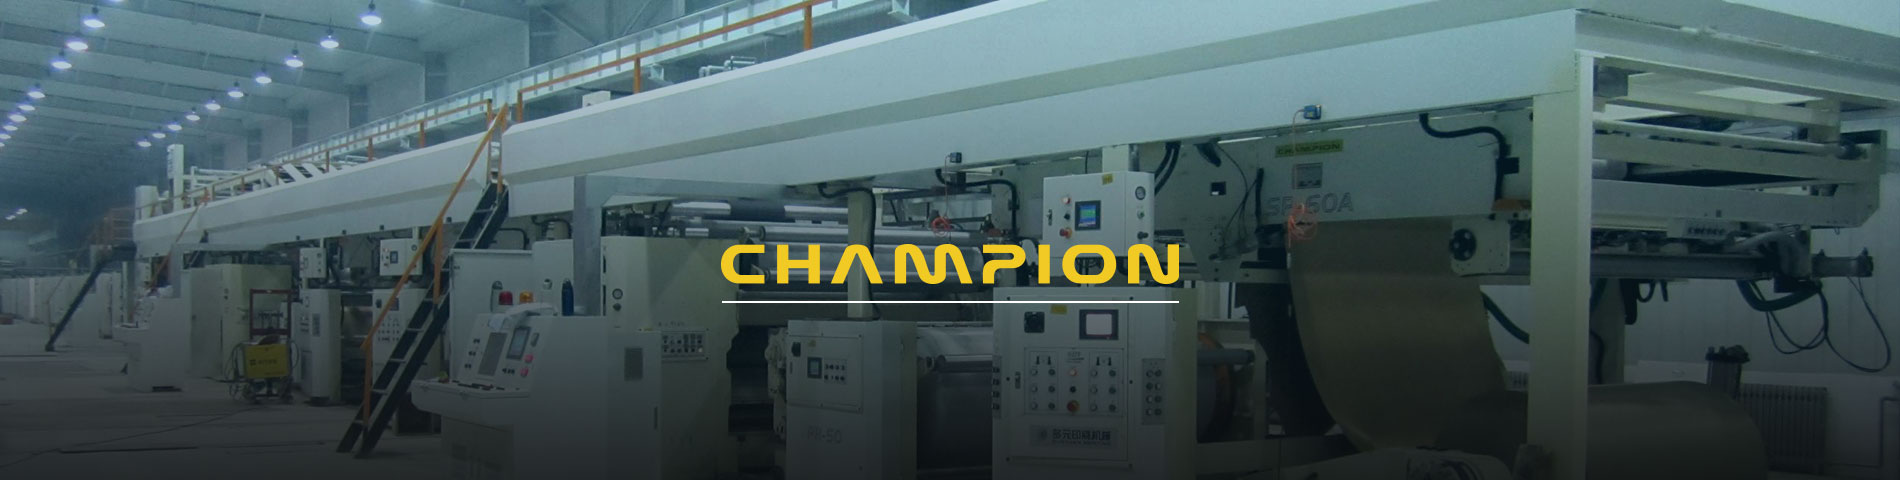 Champion Corrugated ist eine professionelle Wellpappe Gerätehersteller